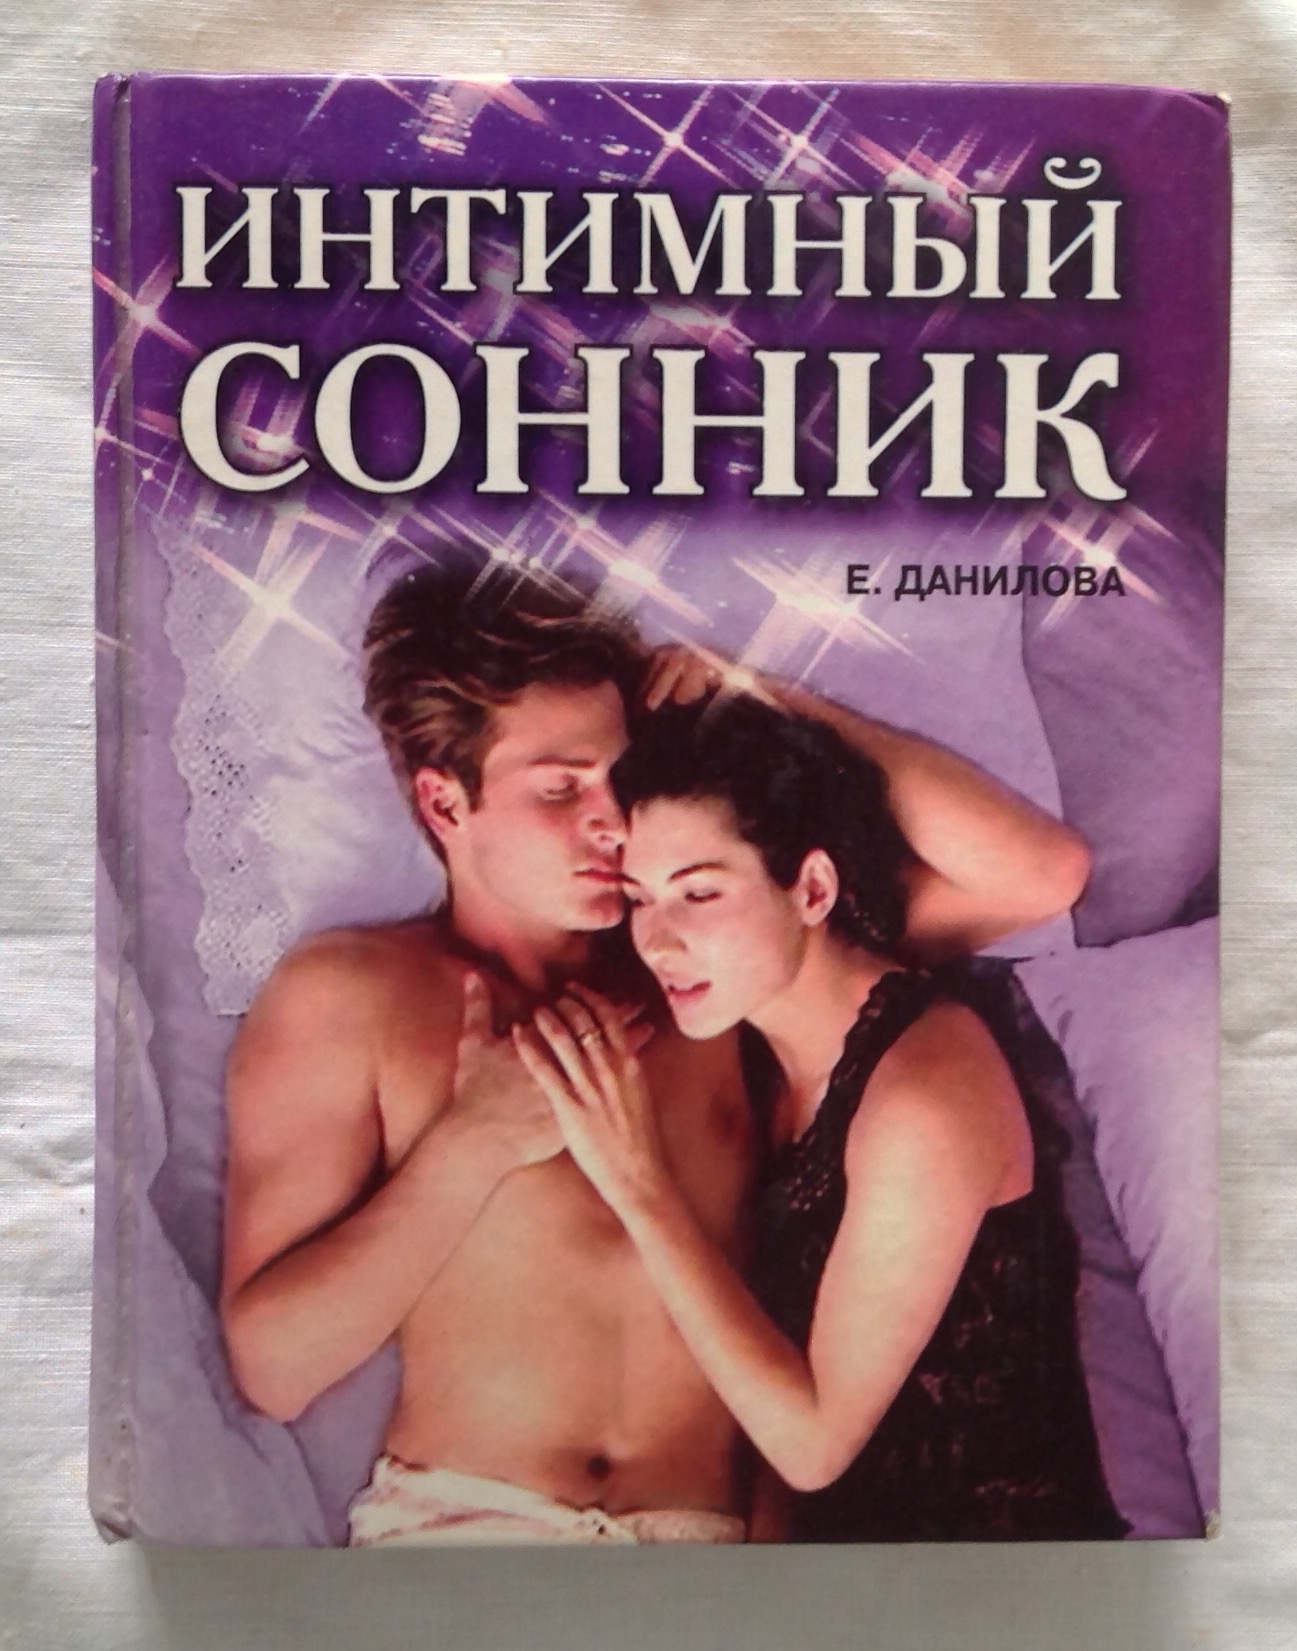 Сон изменял жене приснился. Книга про интимную жизнь. Данилова е. "сонник в дорогу". Видеоэнциклопедия интимной жизни.